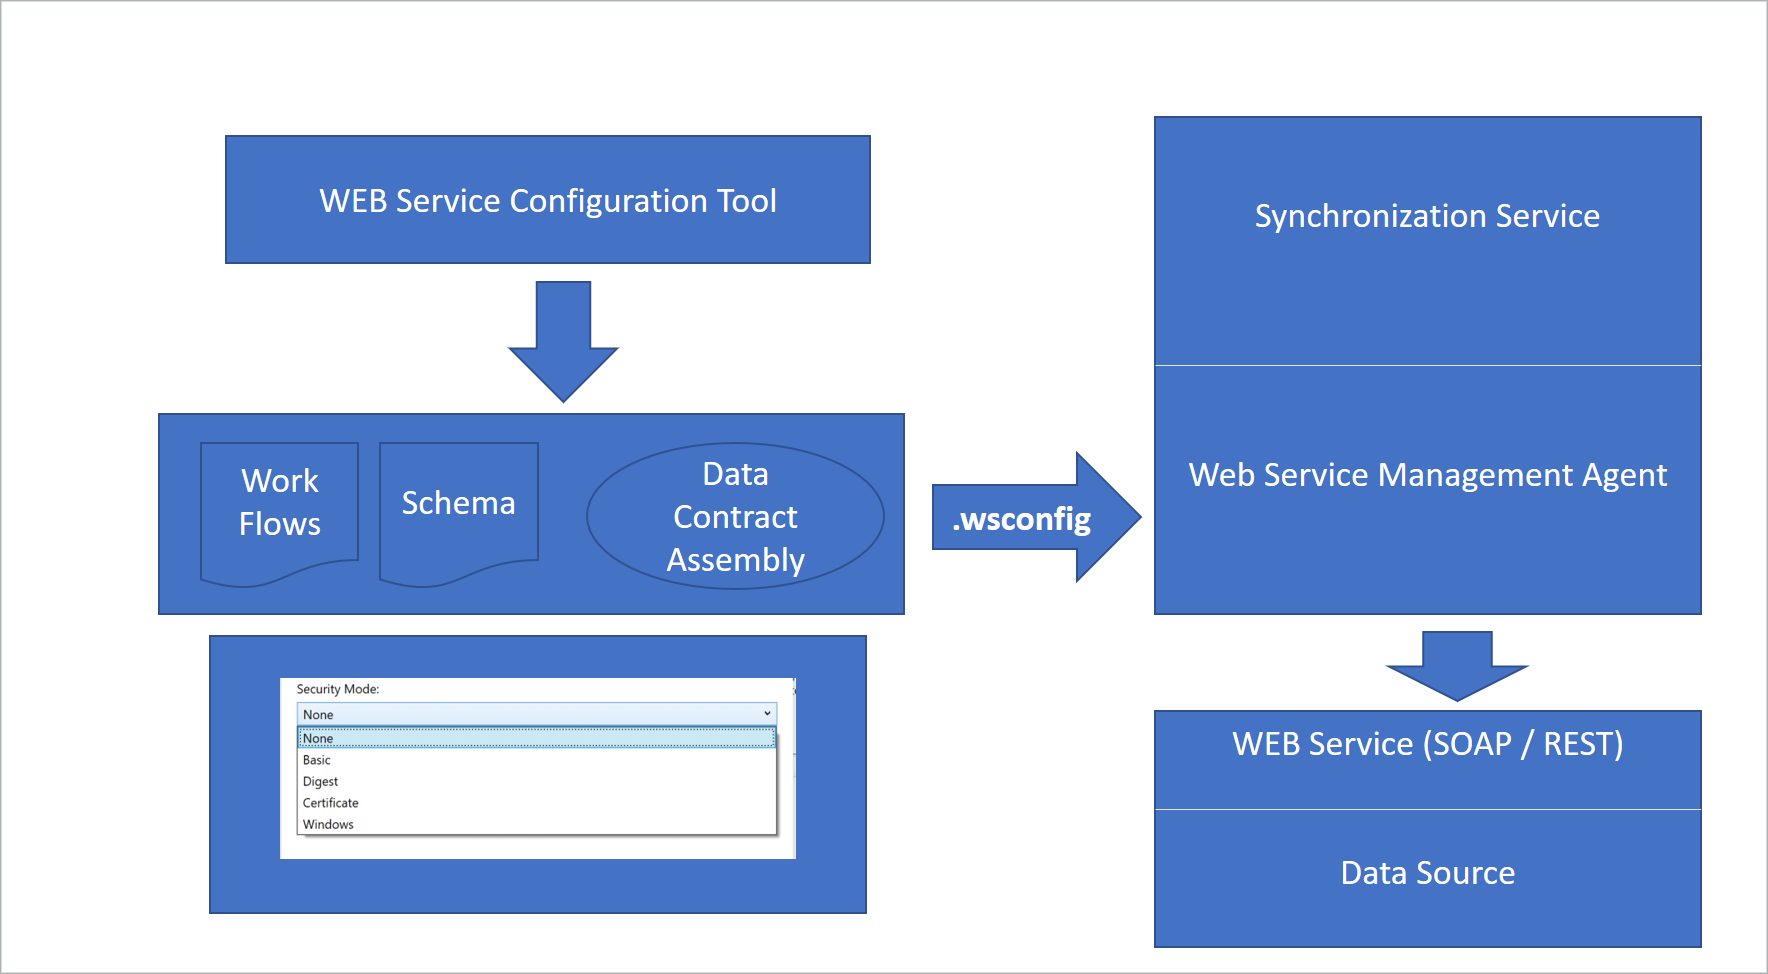 웹 서비스 관리 에이전트에서 사용할 웹 서비스 구성 도구로 .wsconfig 파일을 만드는 워크플로